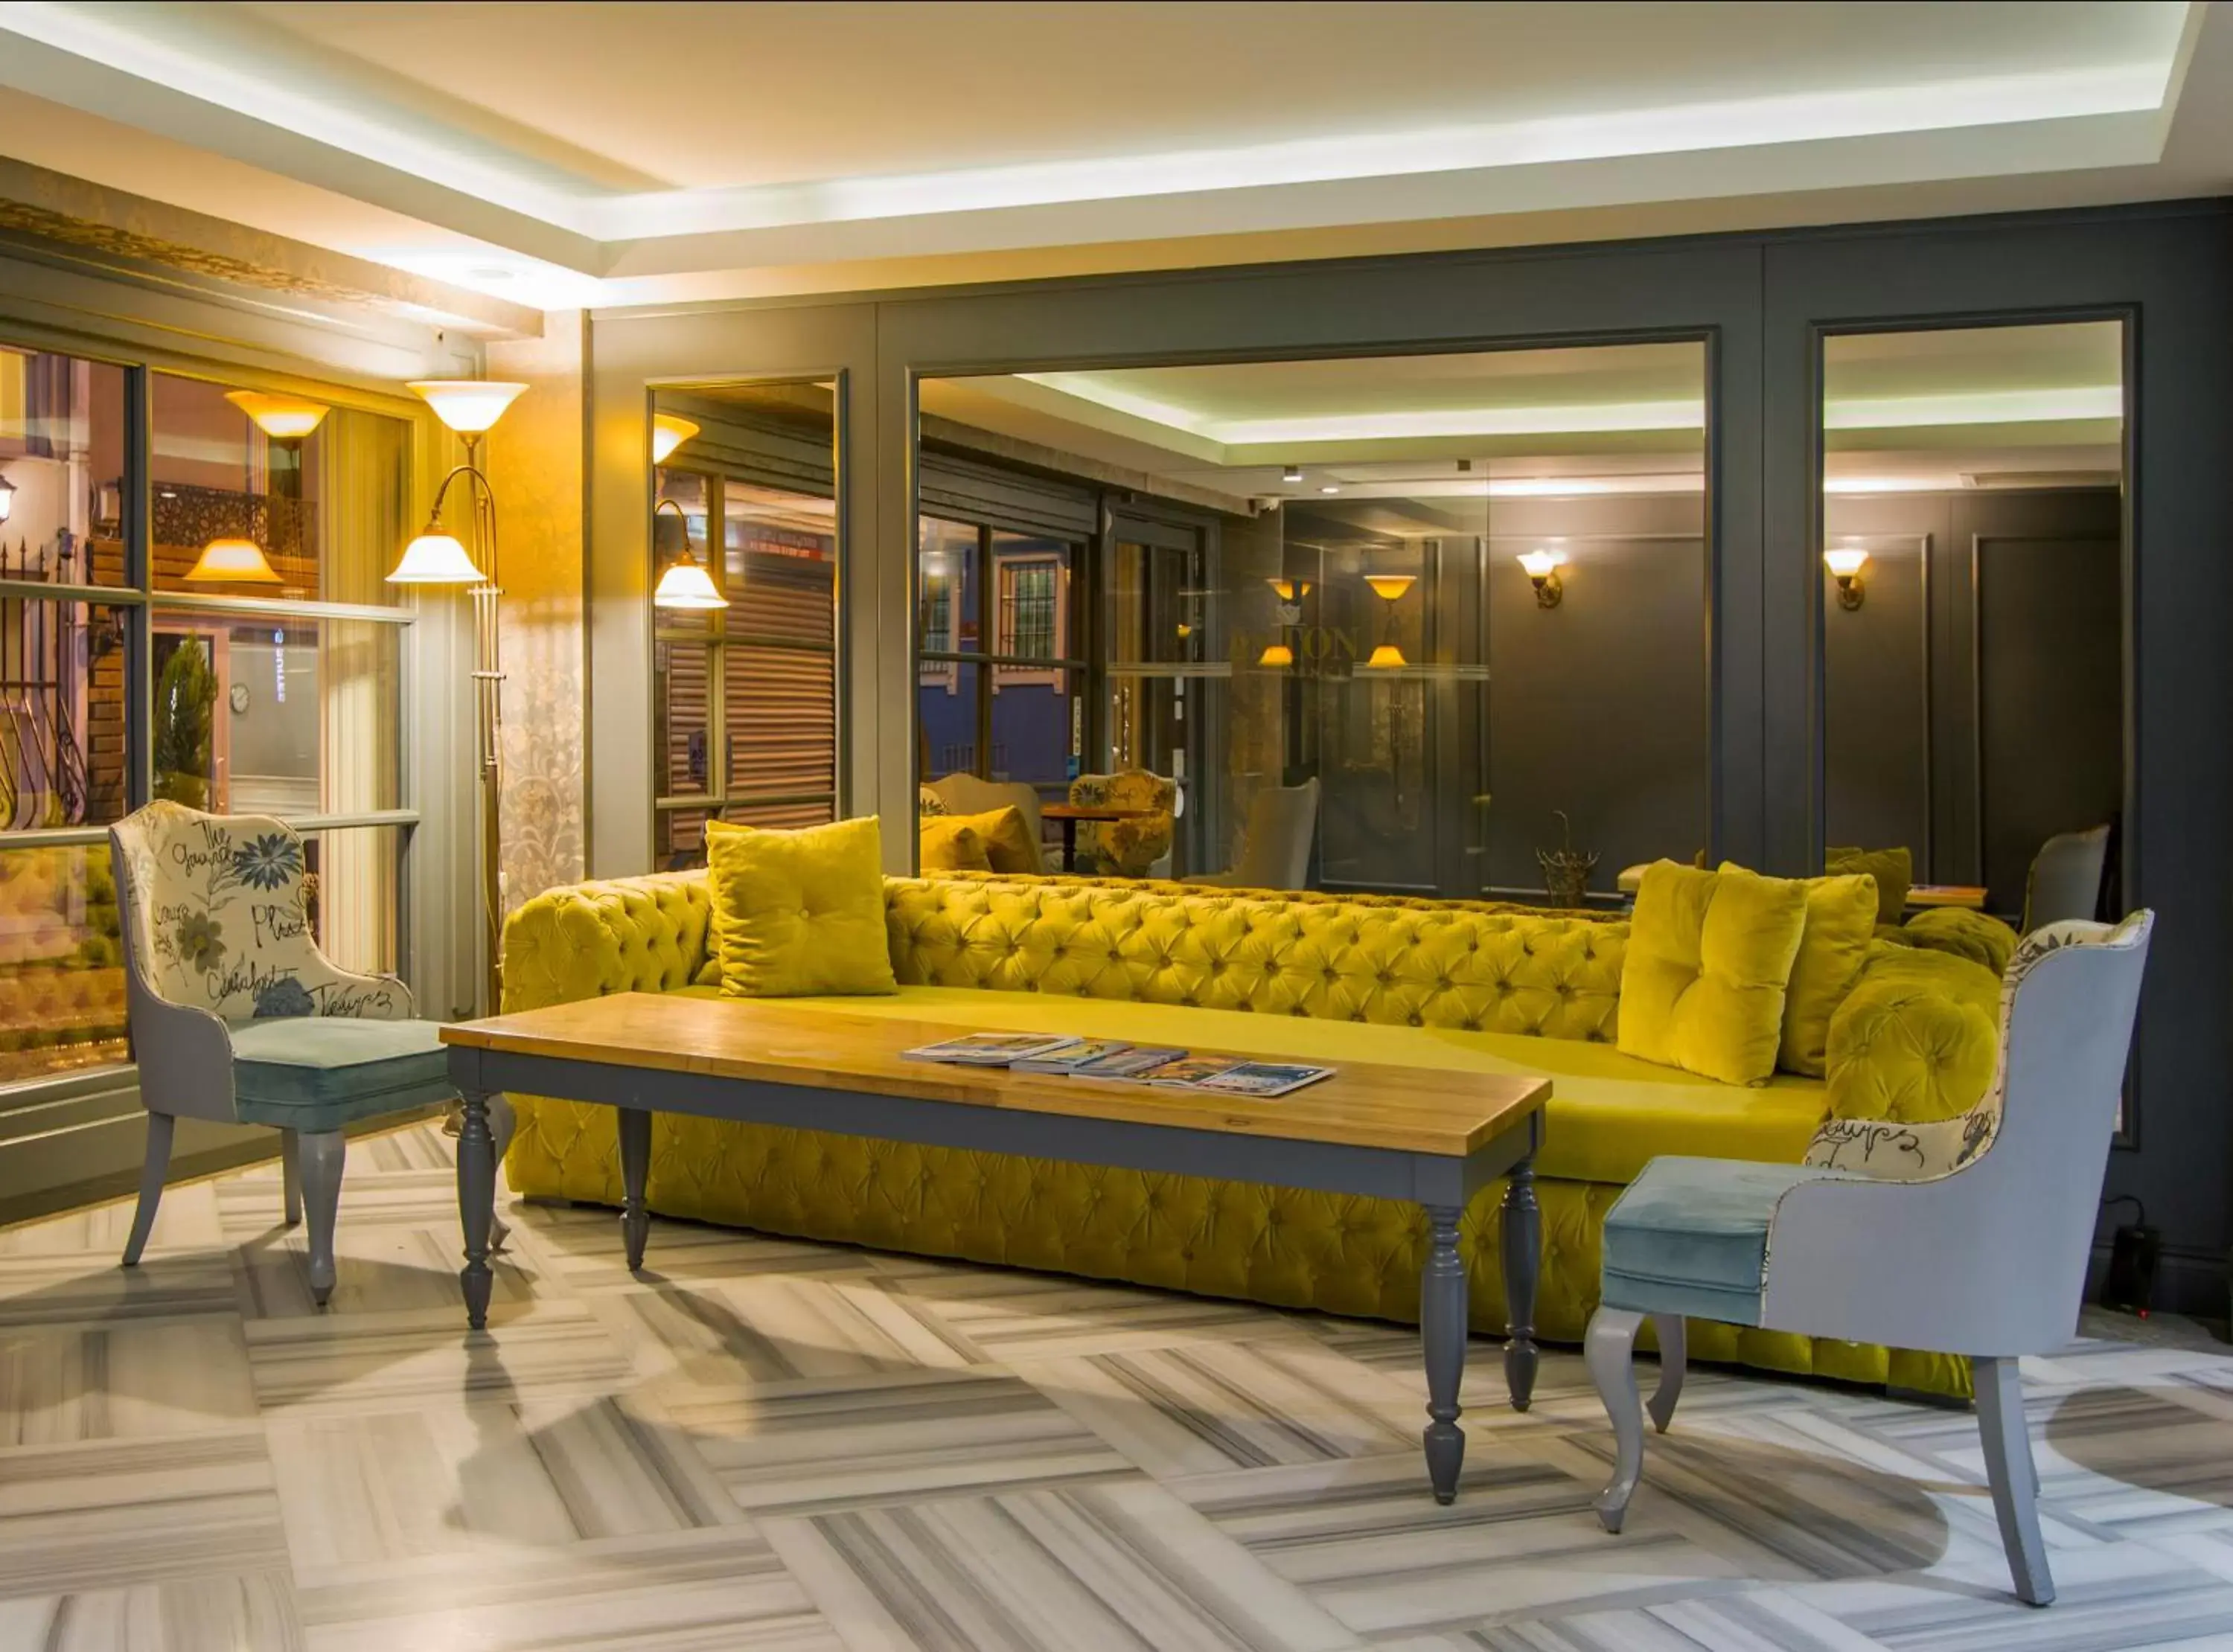 Lobby or reception, Lobby/Reception in Aston Hotel Taksim